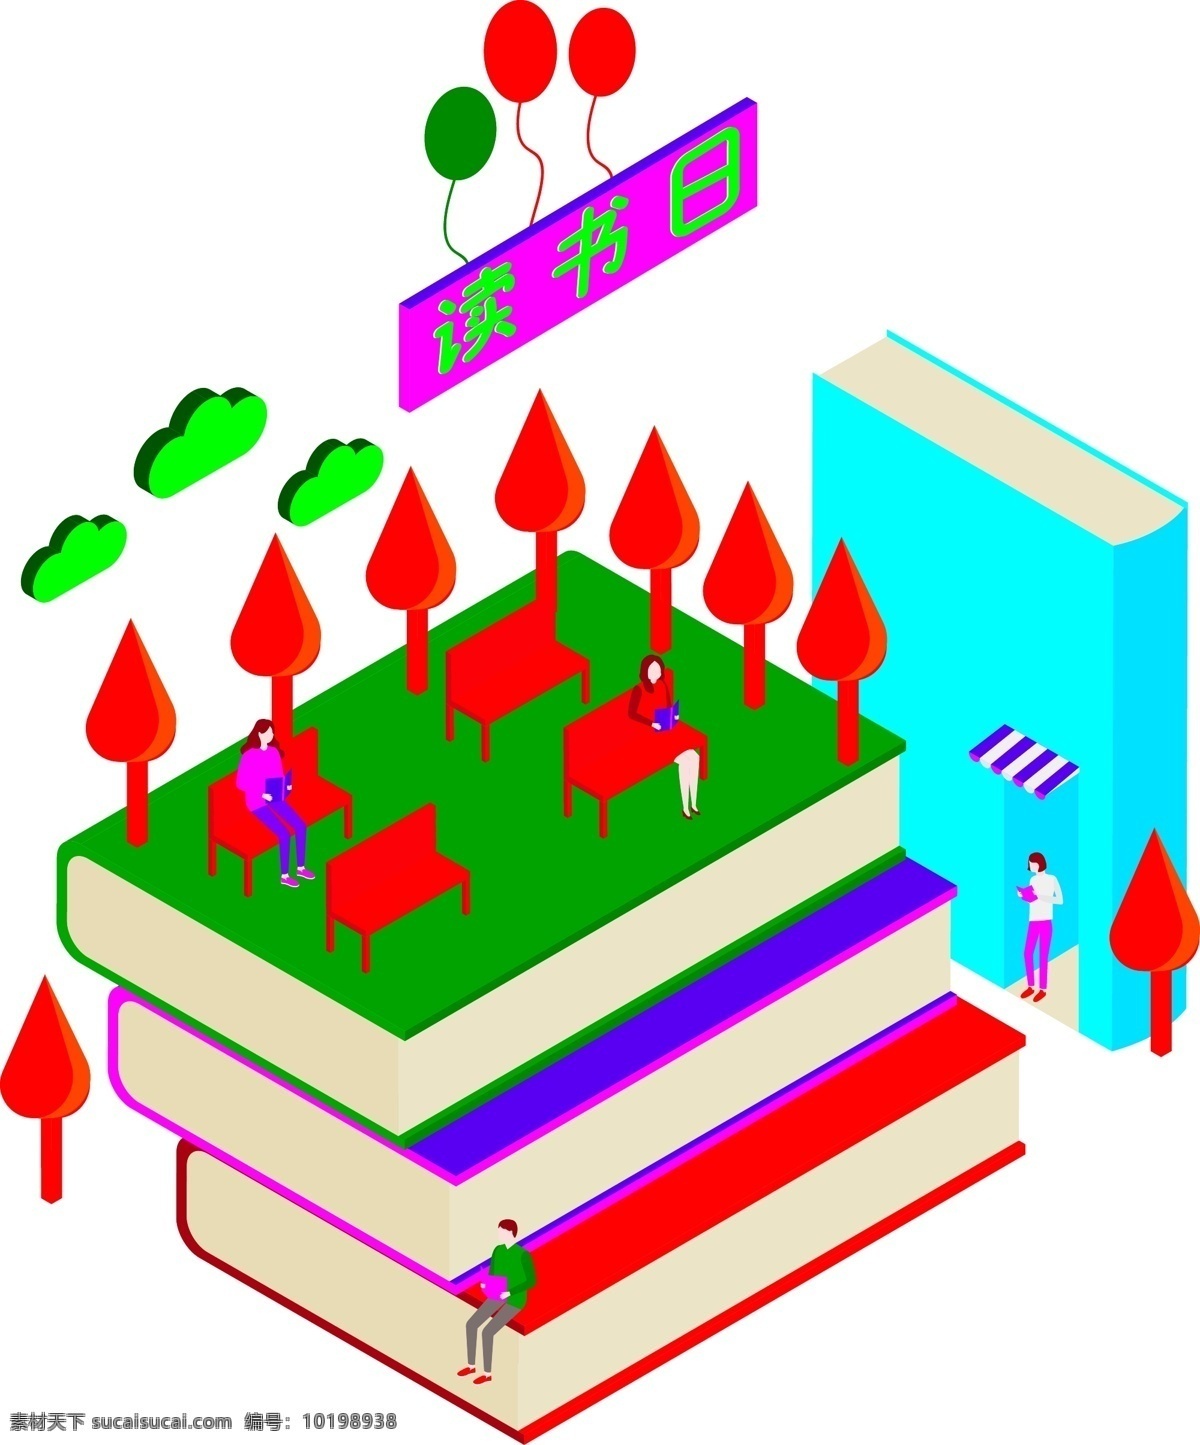 d 教育 人物 书本 矢量 学习 知识 阅读 气球 云朵 小树 看书 椅子 免抠图 矢量图